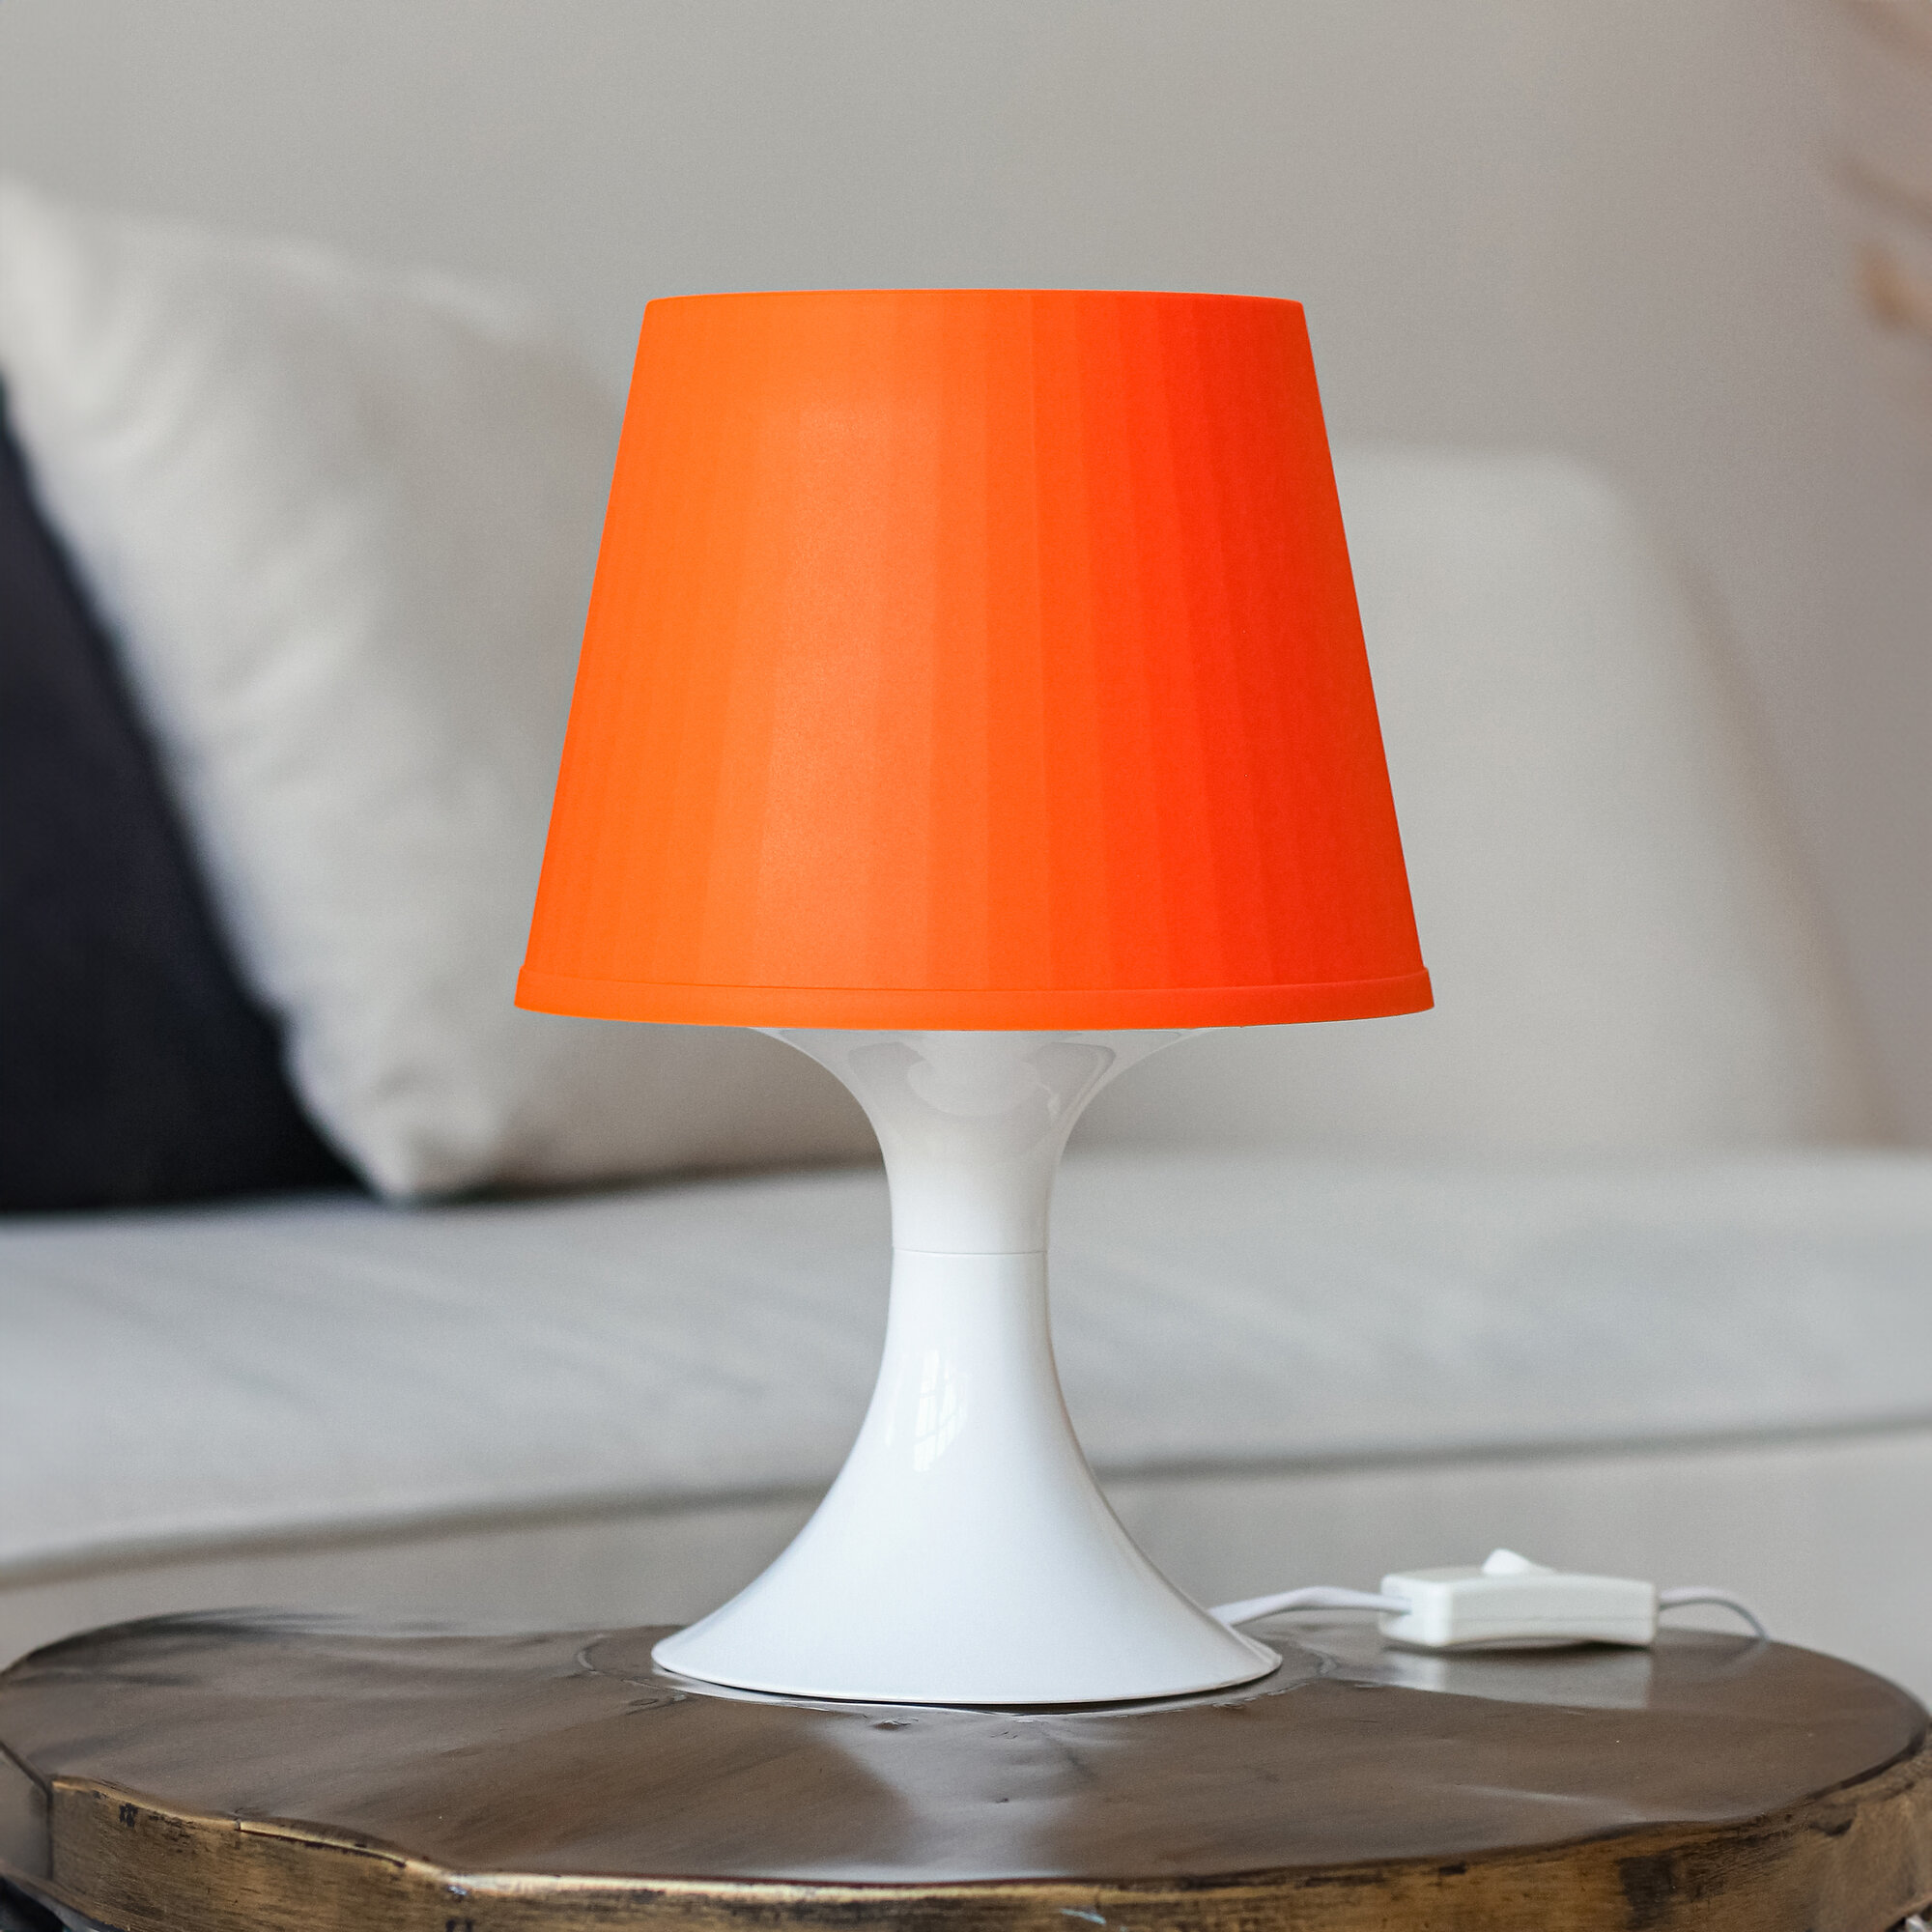 Настольный светильник-ночник с оранжевым абажуром, Светильник прикроватный, Лампа настольная с абажуром